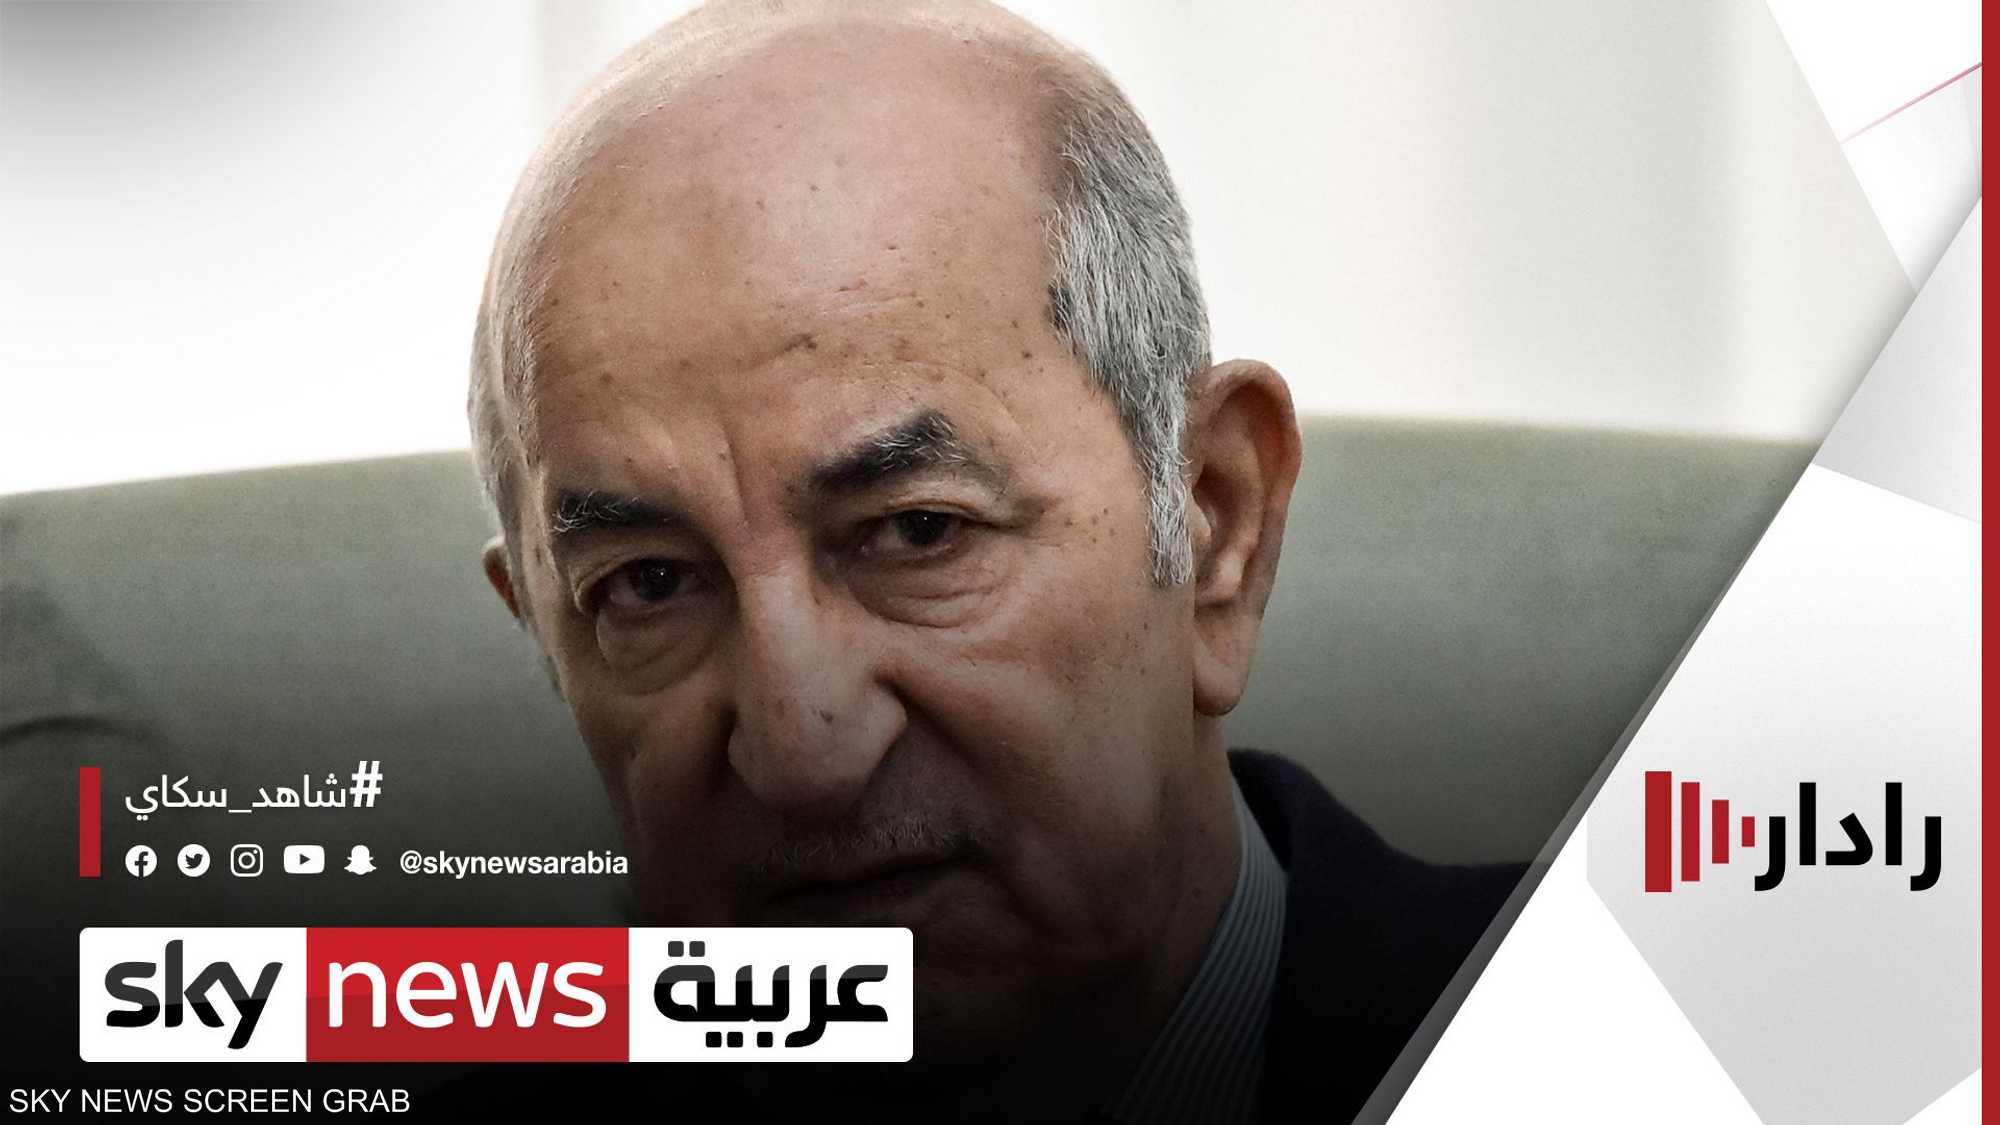 الرئيس الجزائري يبدأ زيارة رسمية للقاهرة